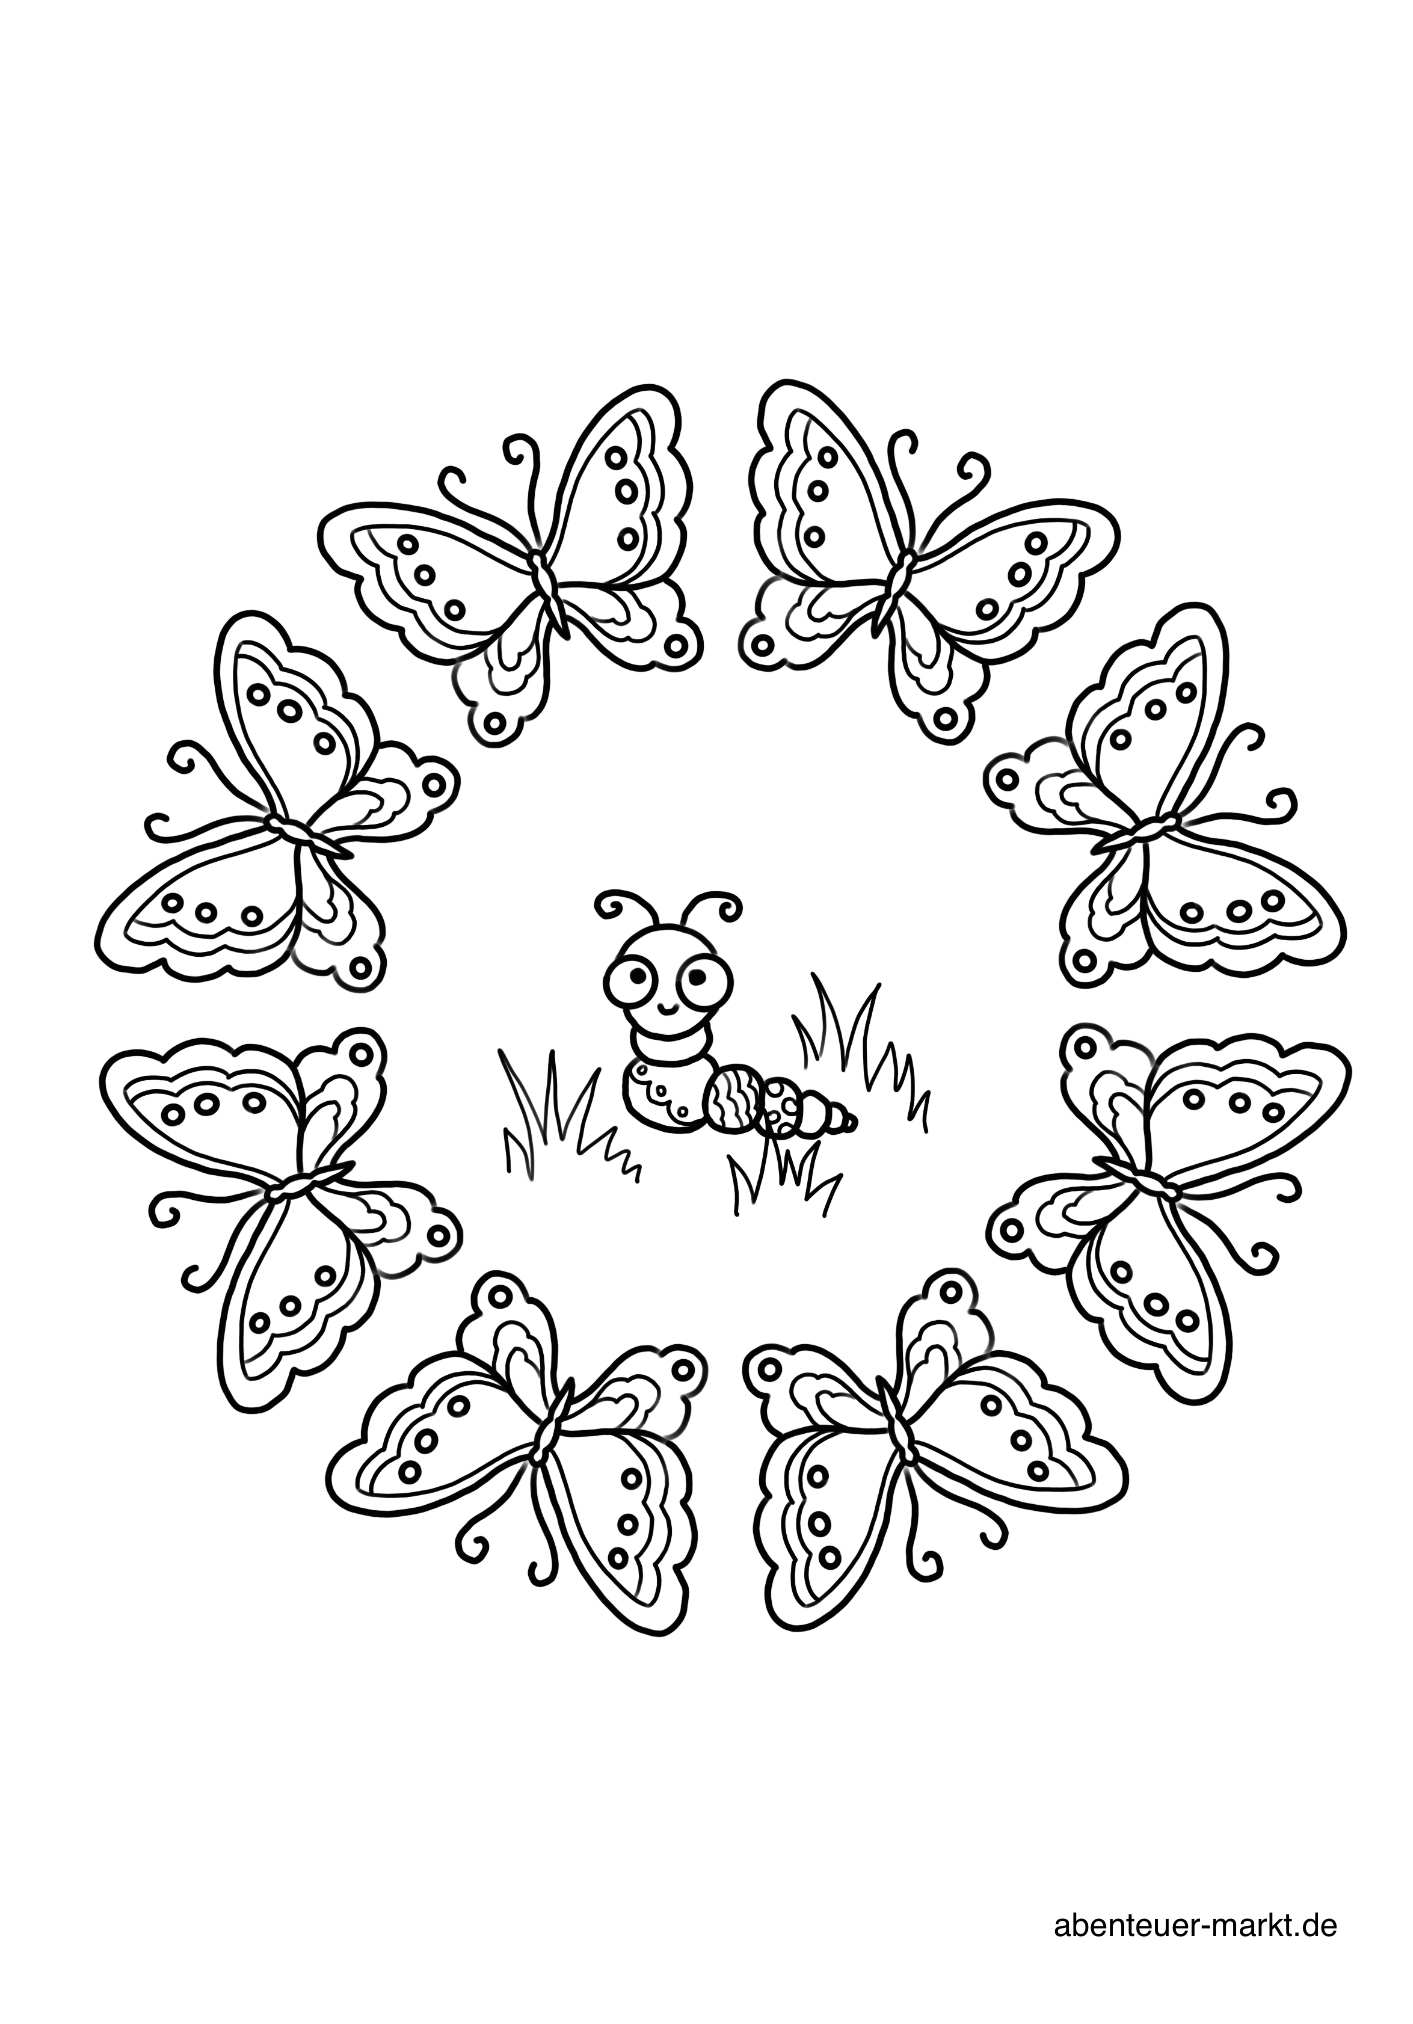 Bild zum Schritt 2 für das Bastel- und DIY-Abenteuer für Kinder: 'Raupe mit Schmetterlingen'